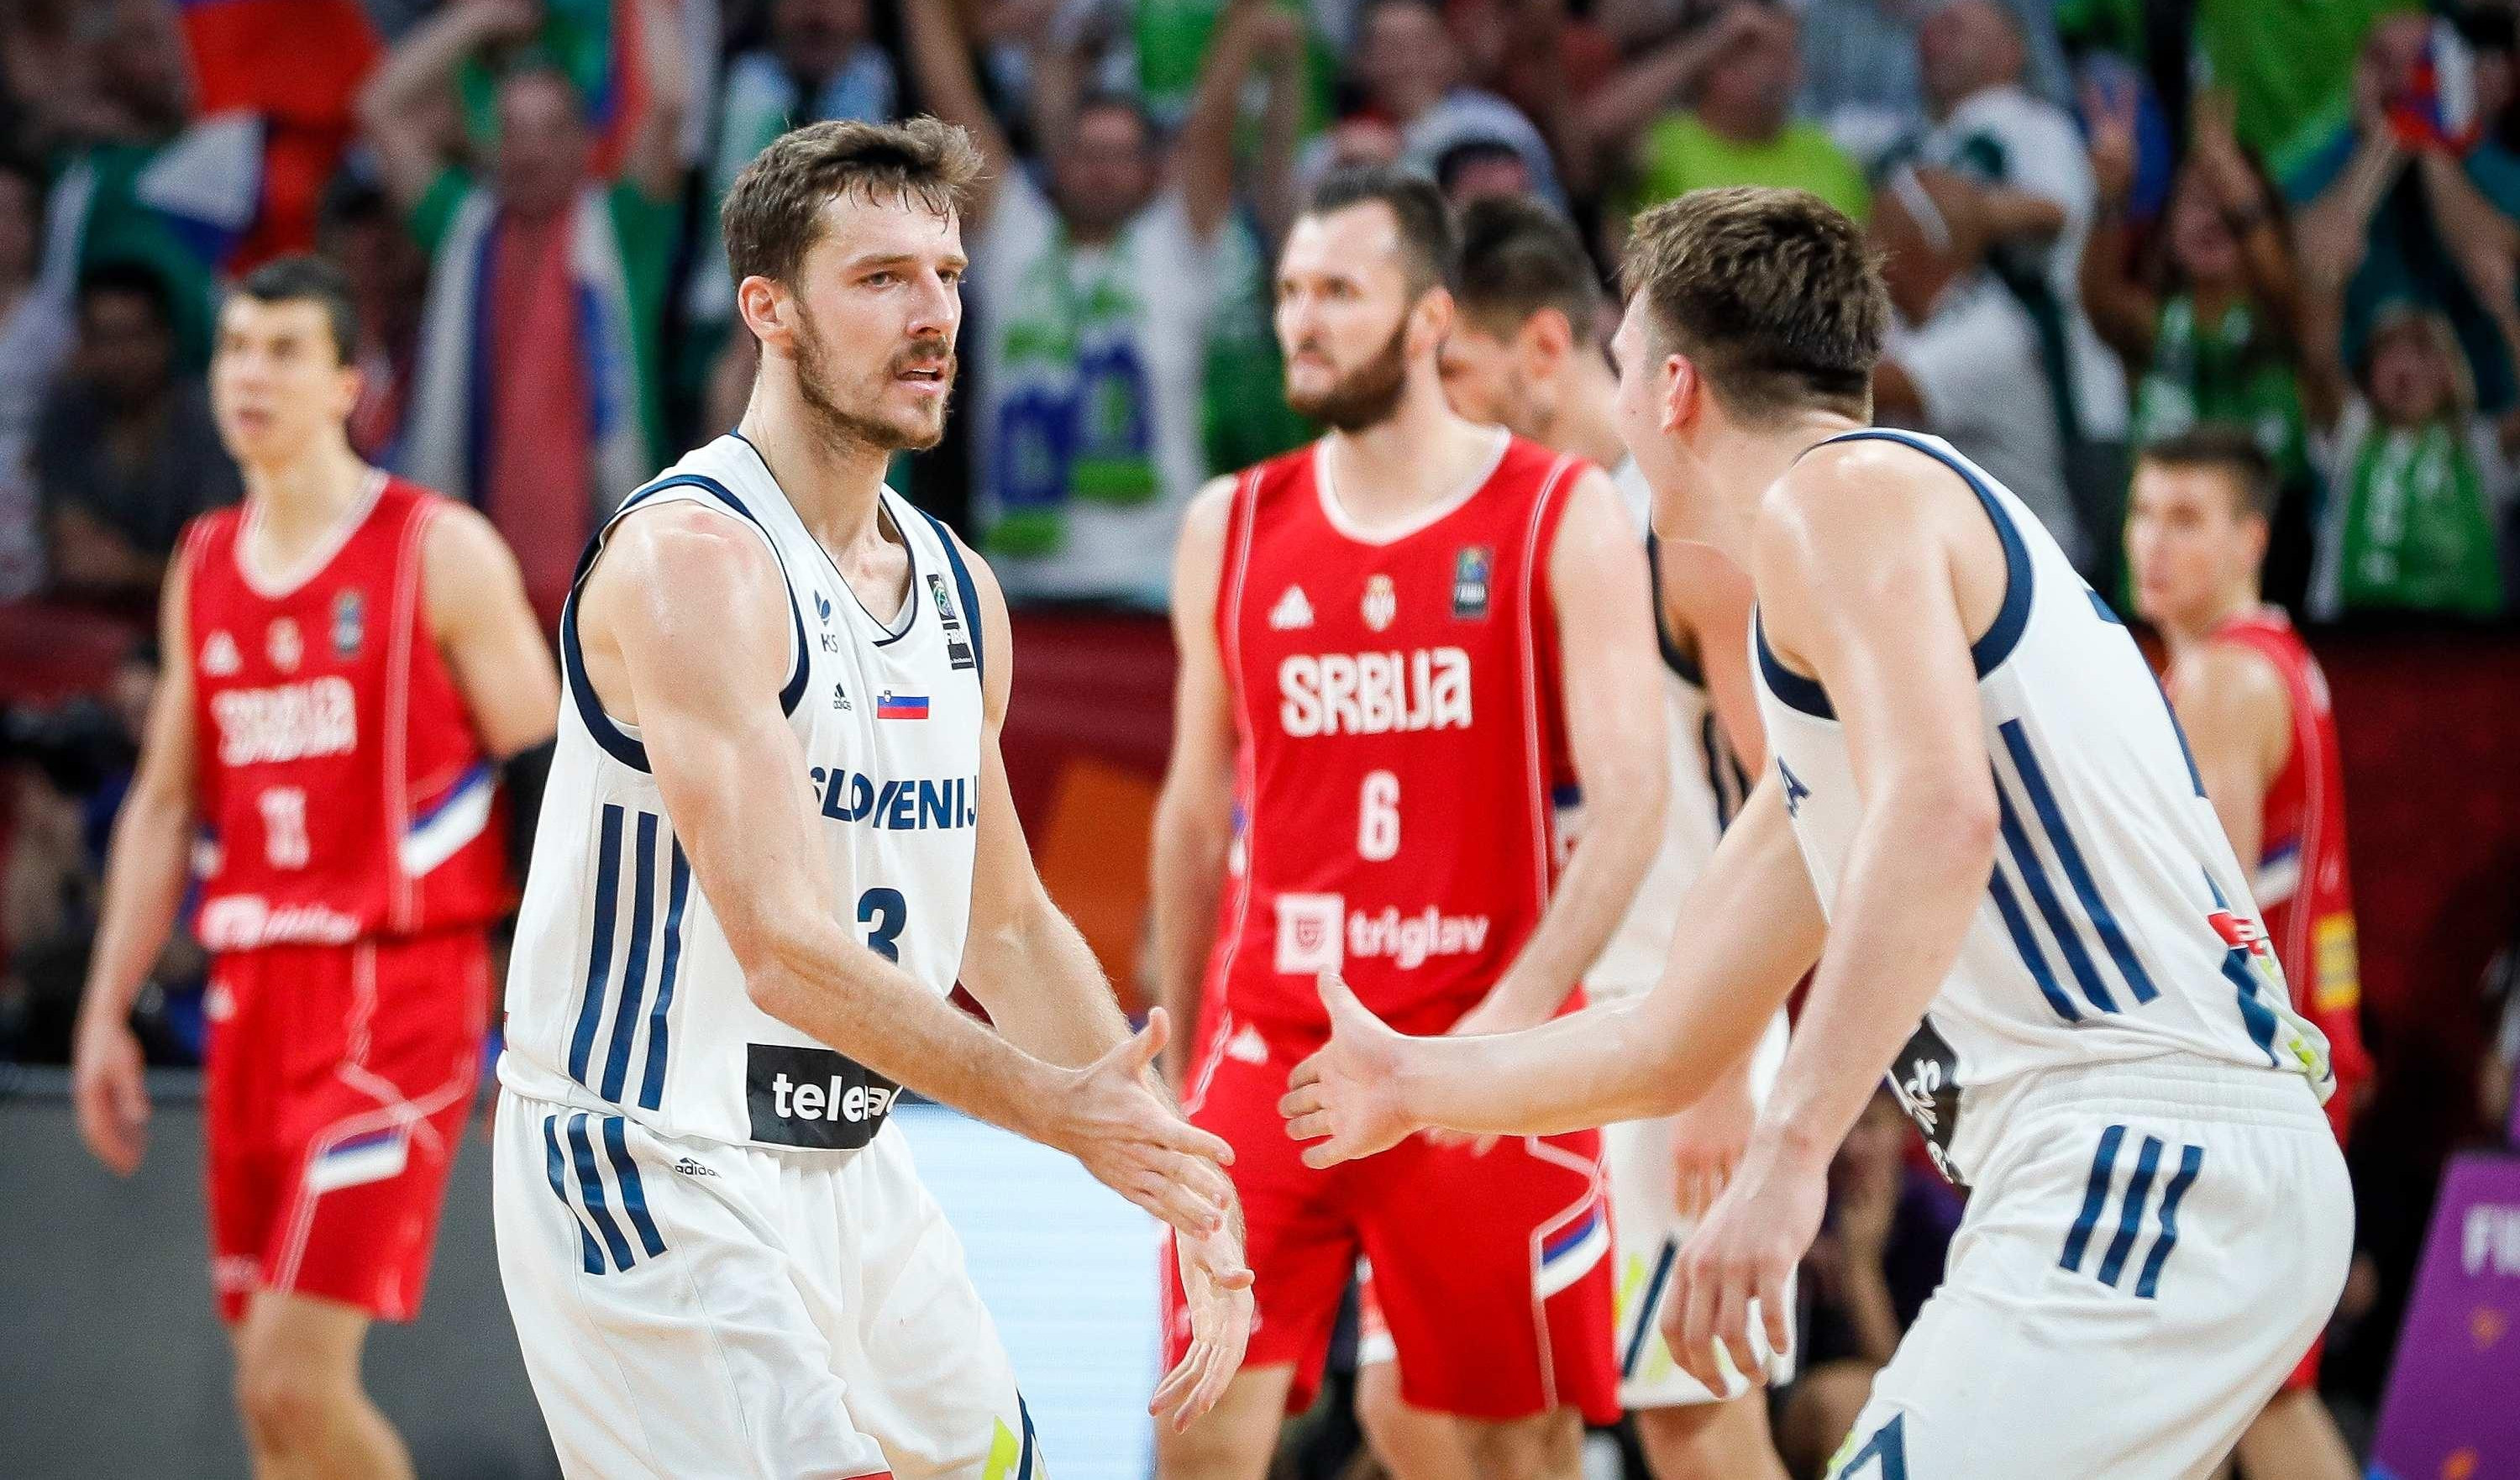 (FOTO) ODBOJKAŠIMA STIGLE ČESTITKE OD DRAGIĆA I DONČIĆA! Košarkaši se javili nakon finala, kapiten Slovenije žali zbog zlata!